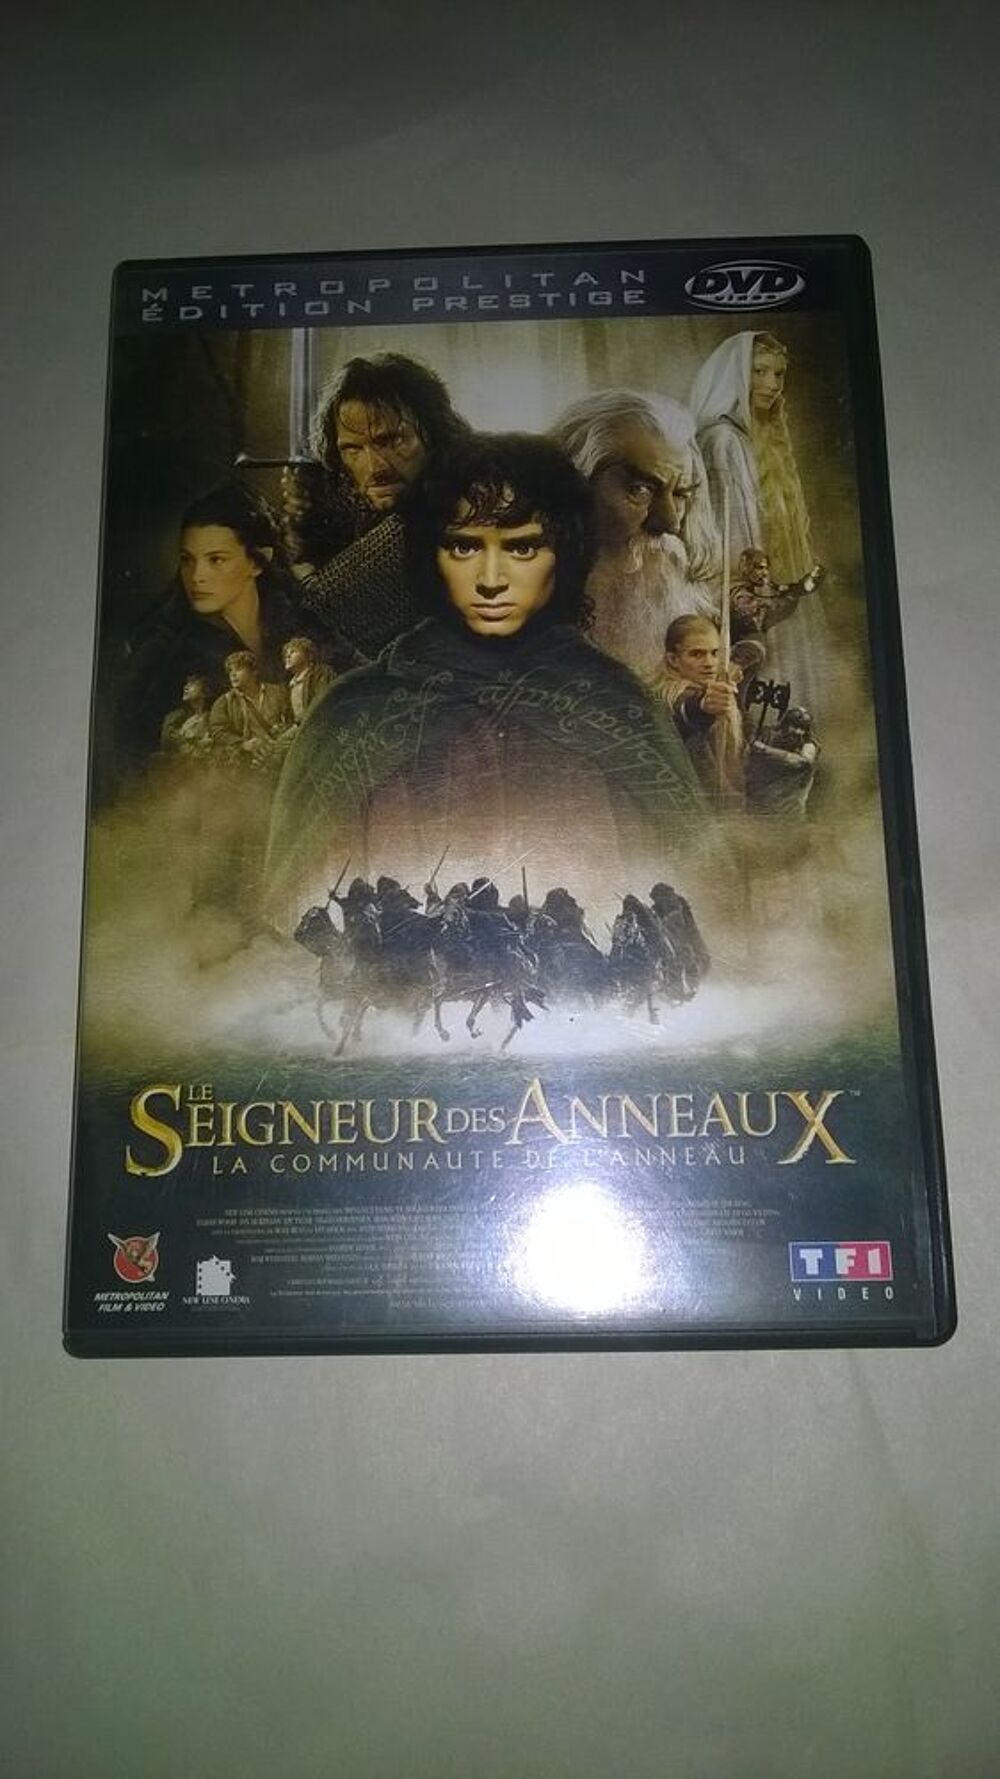 DVD Le seigneur des anneaux
La communaut&eacute; de l'anneau
2002 DVD et blu-ray